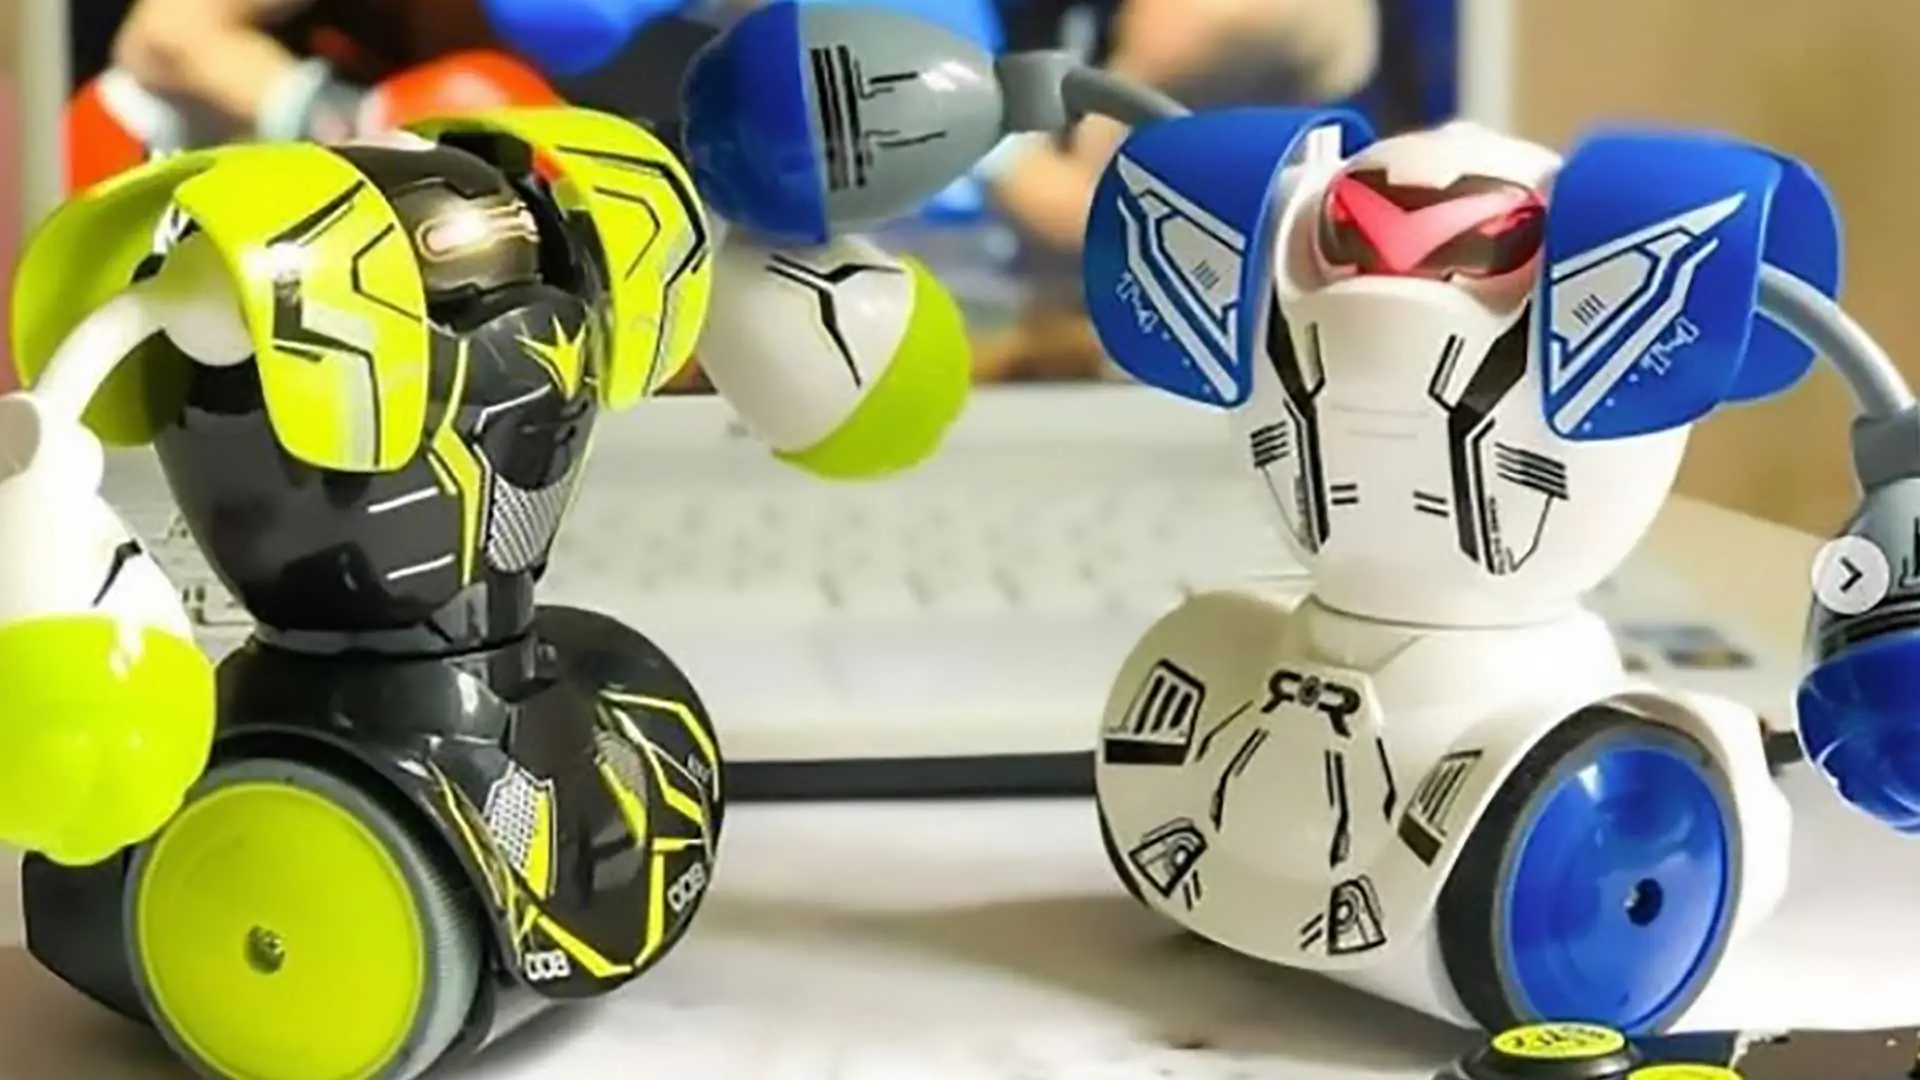 Ycoo par Silverlit - Robot Kombat Ballon télécommandé 14 cm - Pack